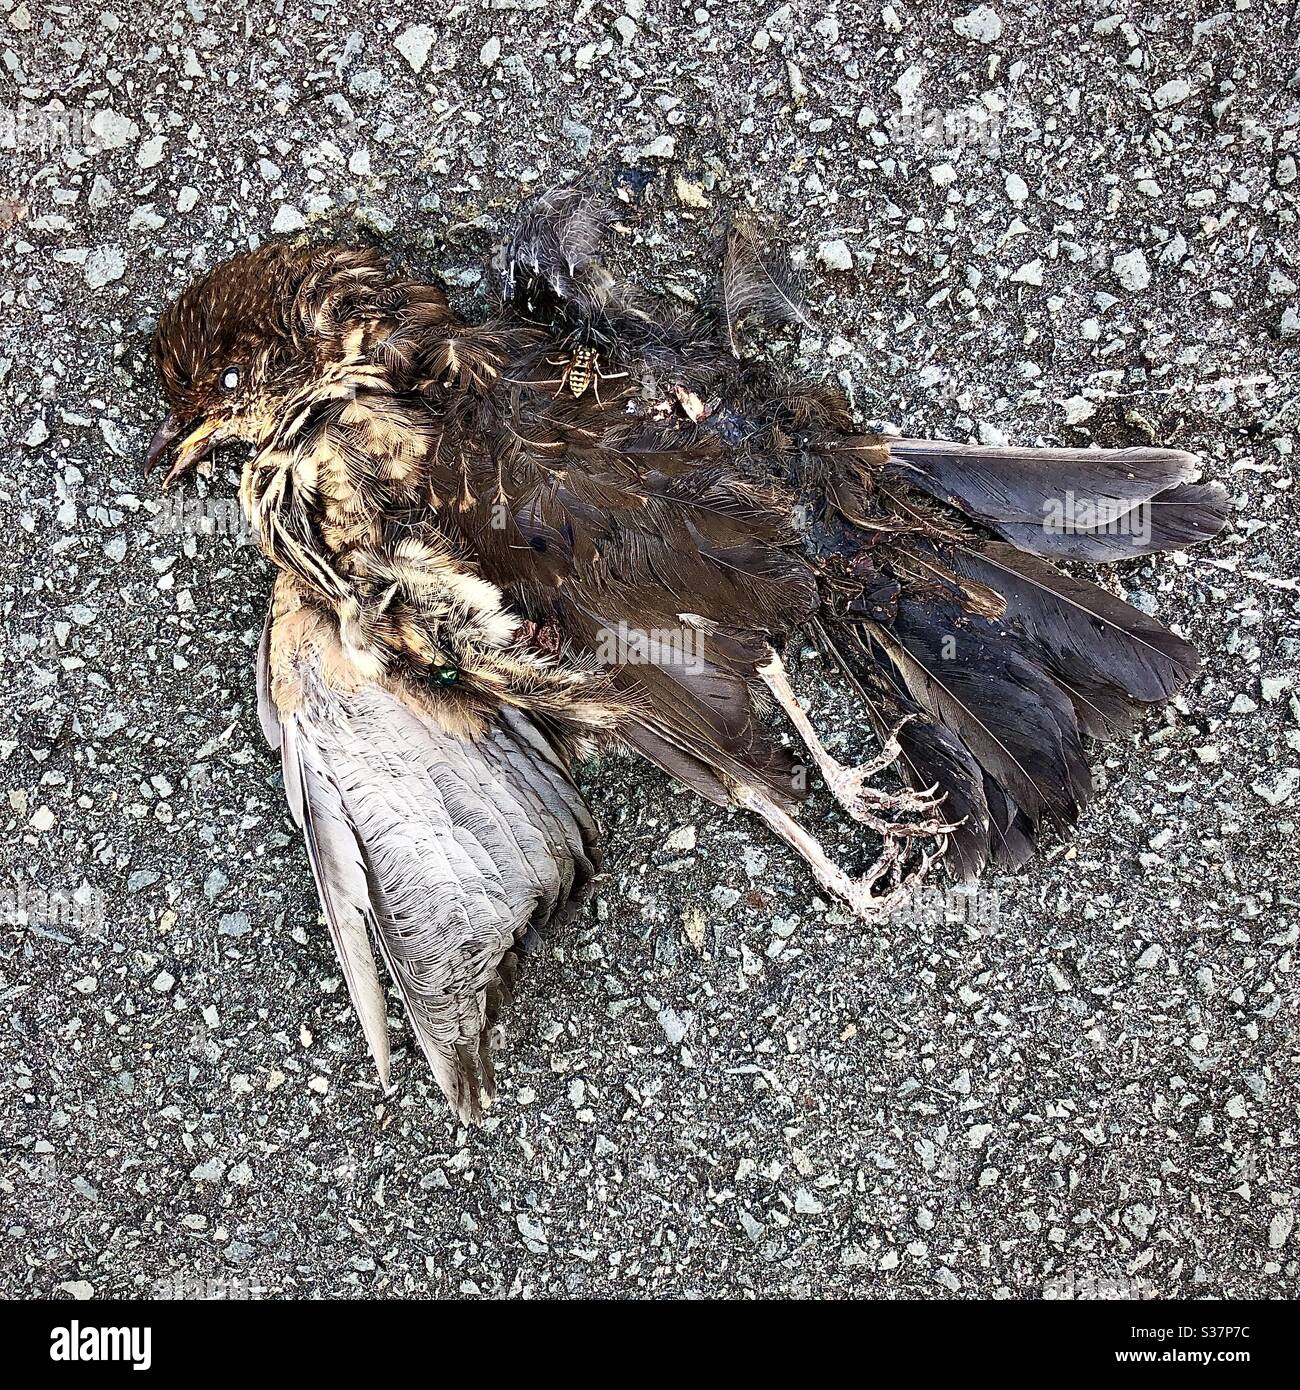 Dead bird on road surface. Stock Photo